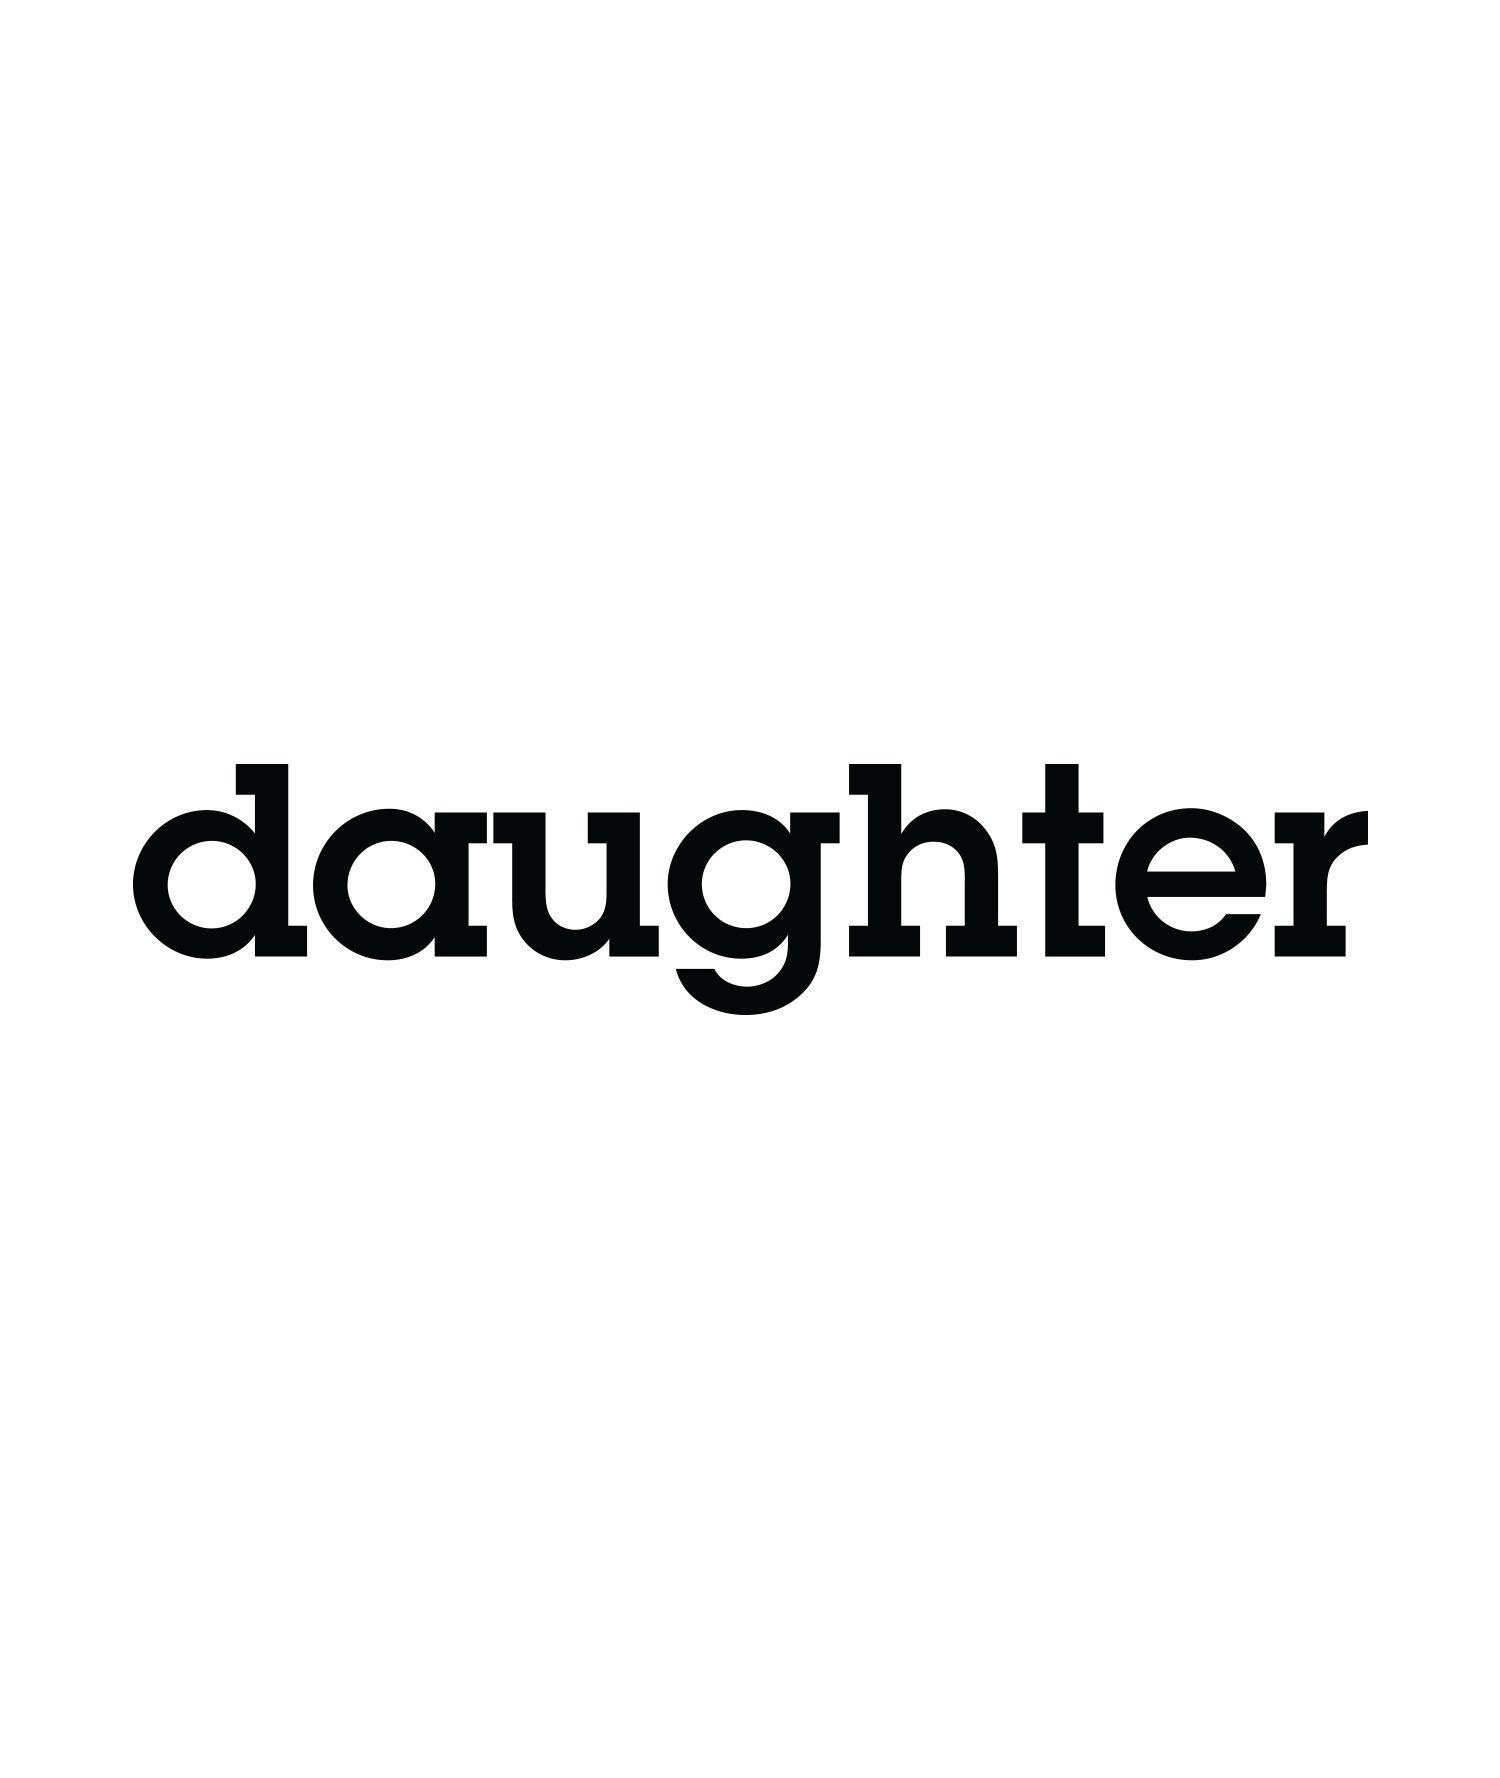 Daughter Logo - Daughter — Horror Vacui Studio